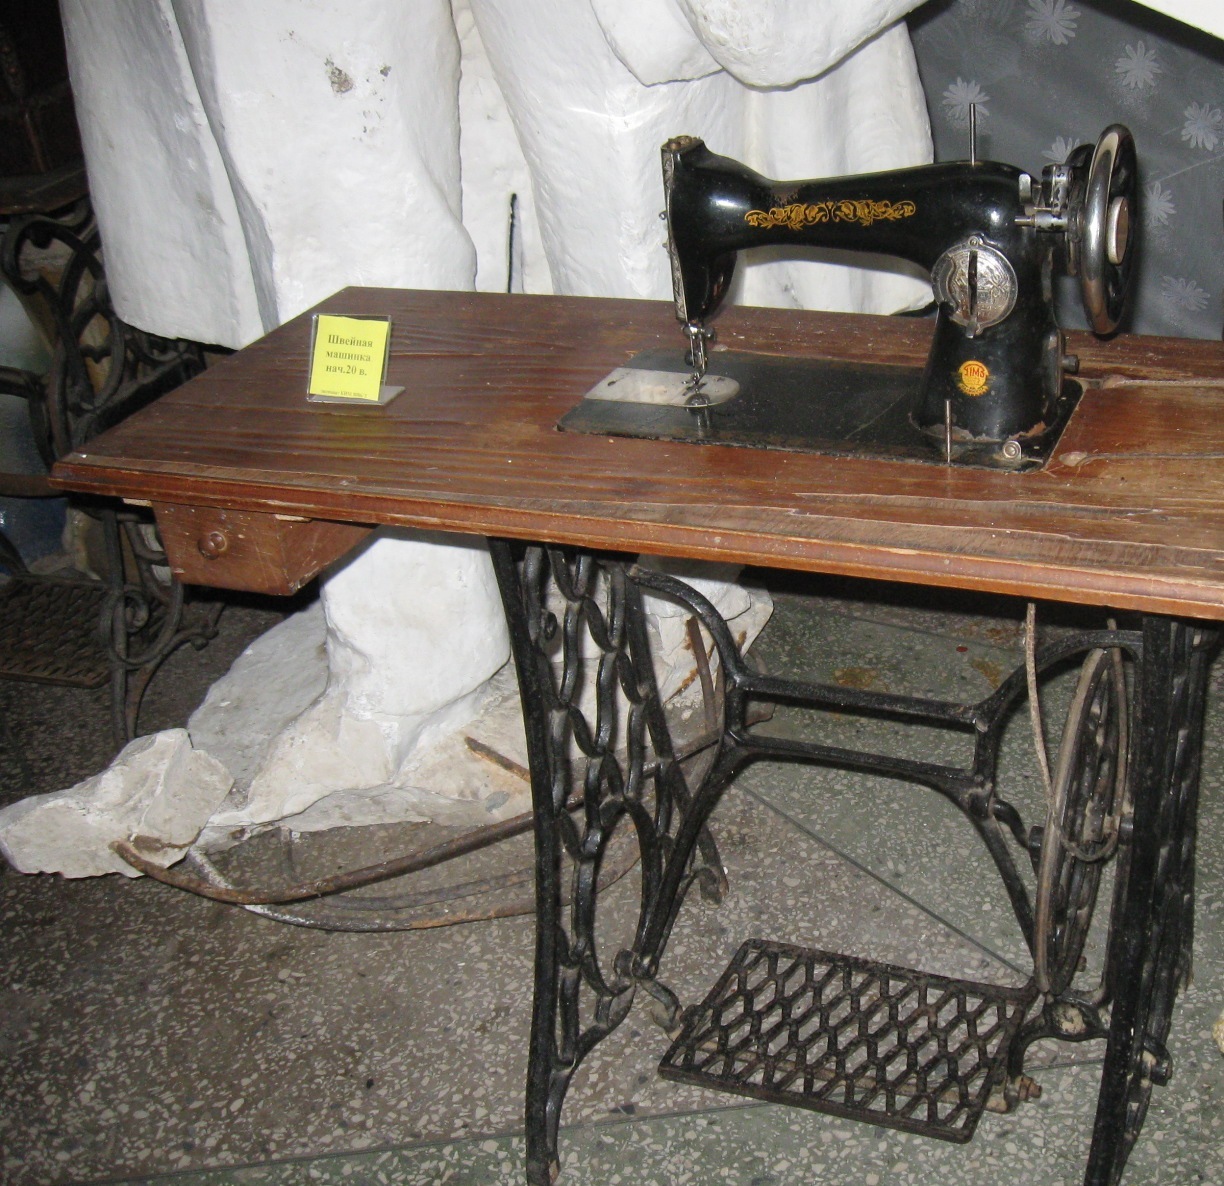 Элементы машиноведения и работа на швейной машине